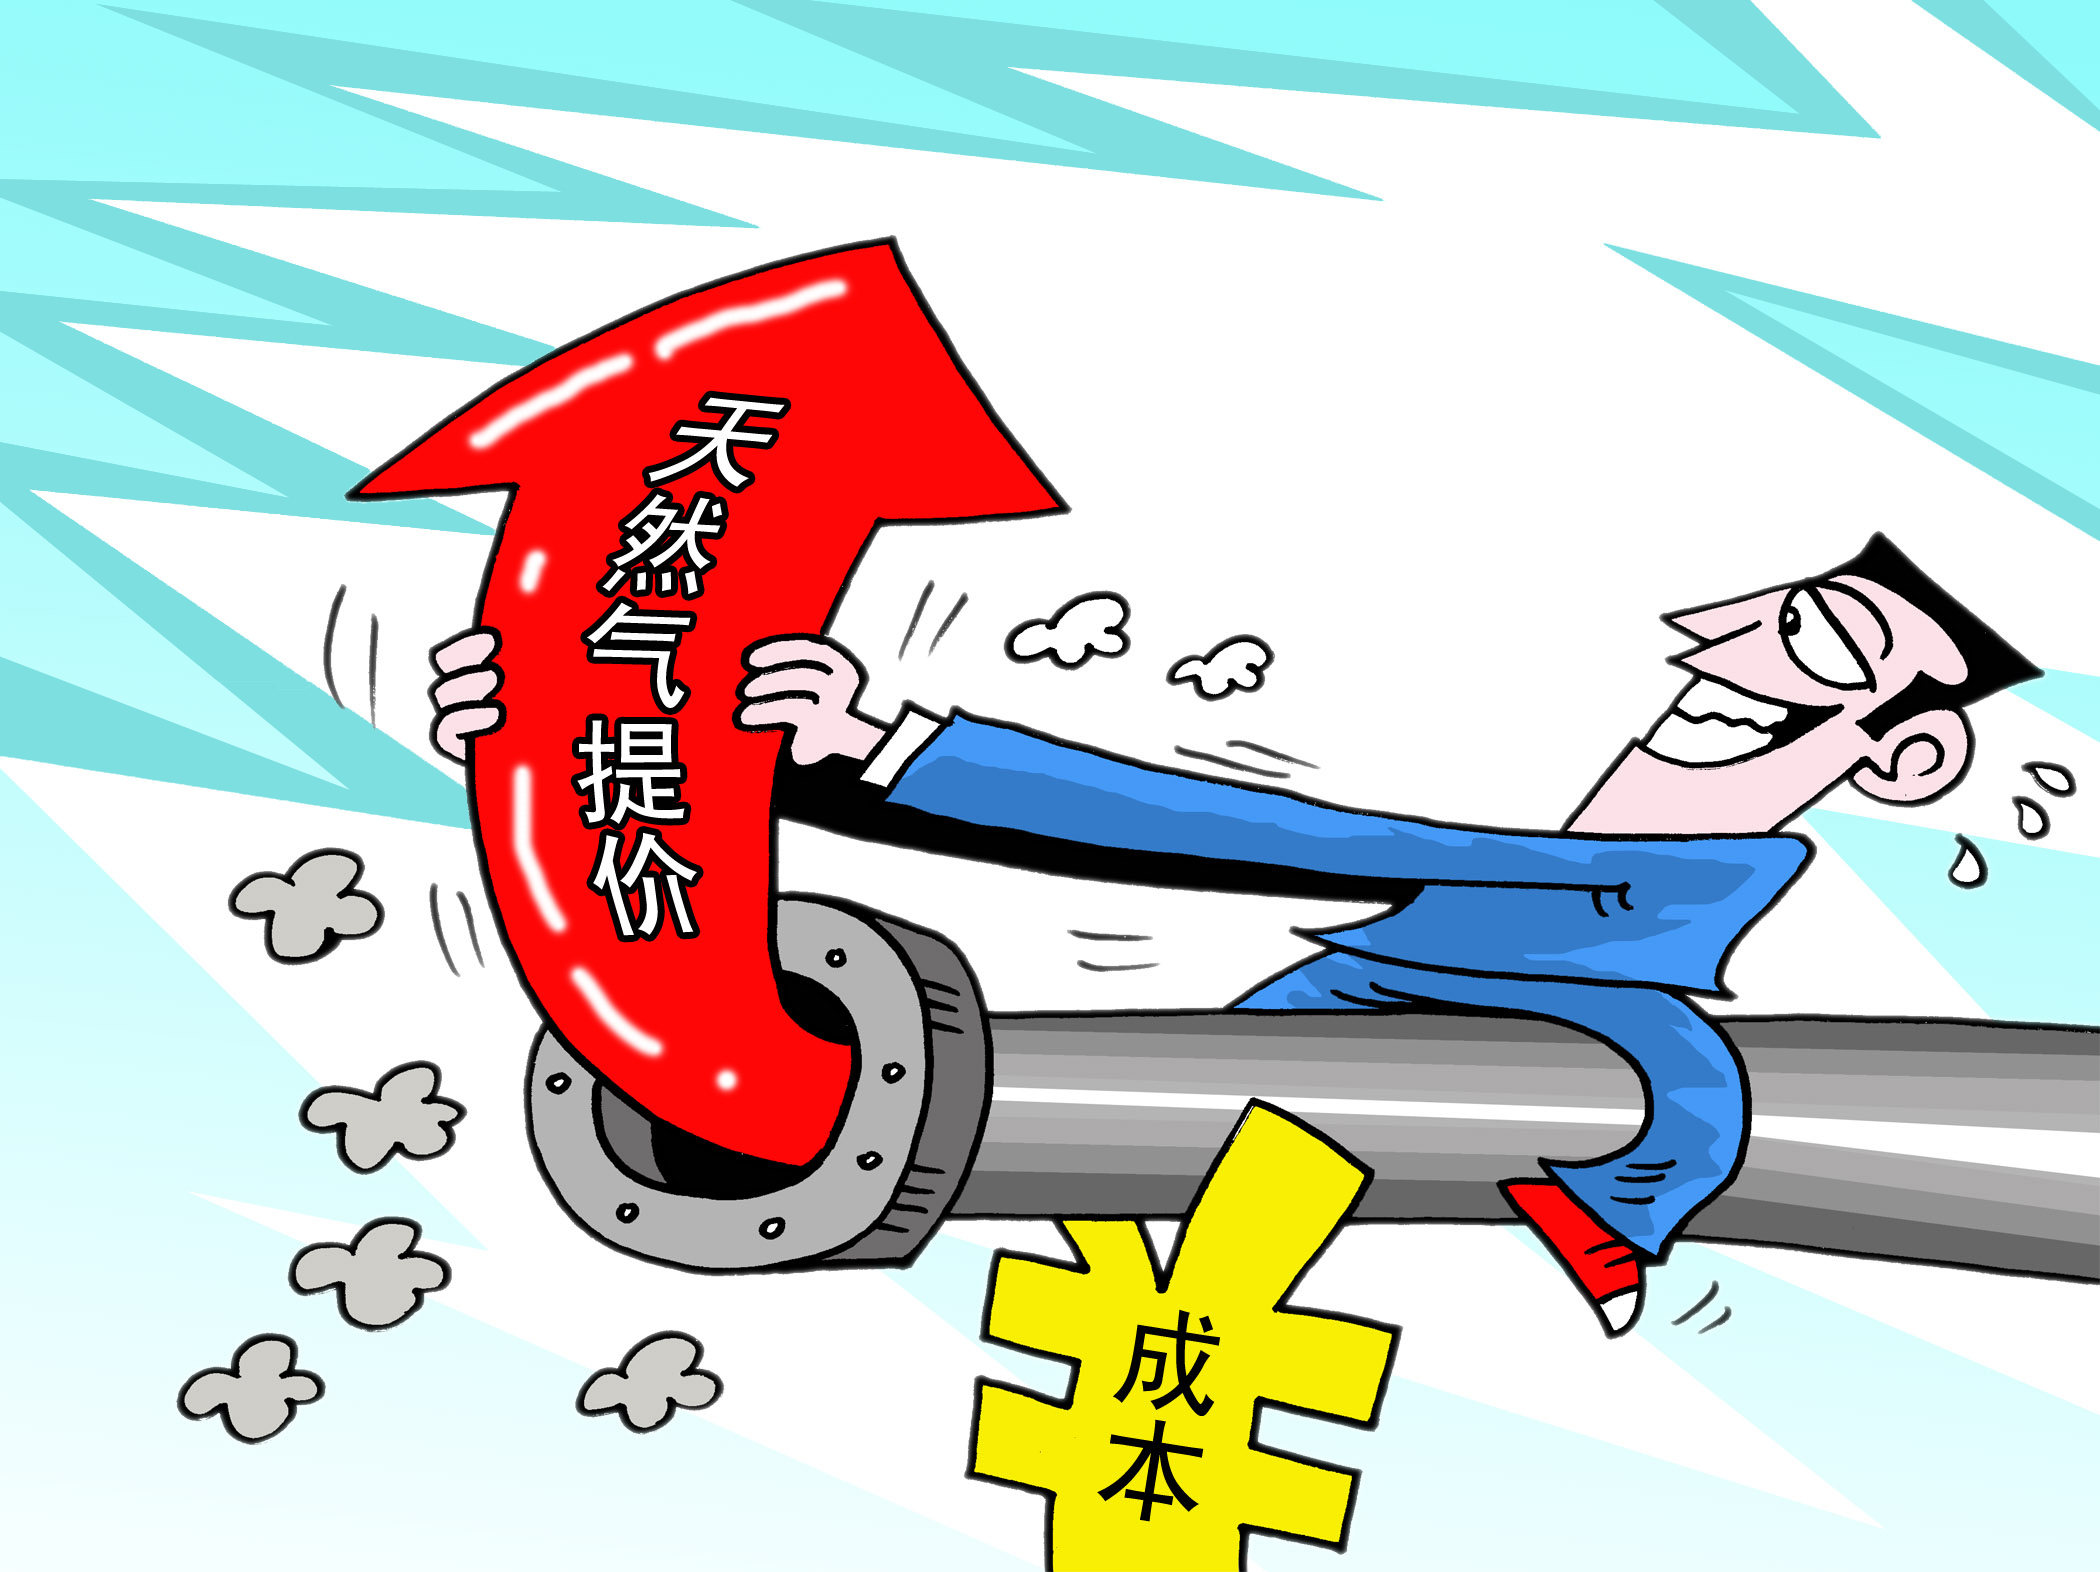 漫画:贵州燃气:上游天然气价格上涨可能增加本公司成本 造成不